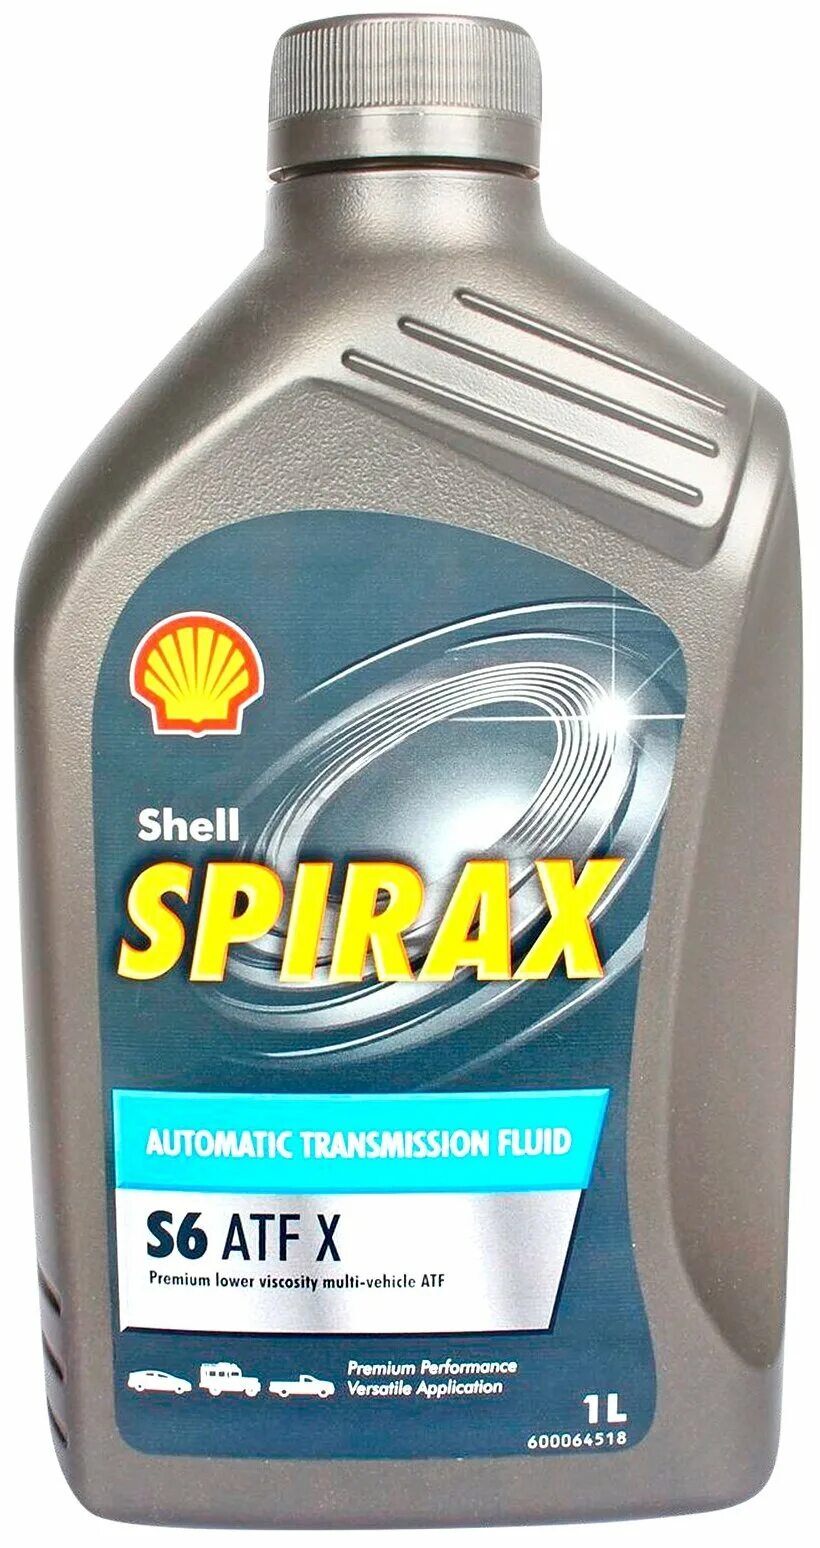 Shell s6 atf x. Shell Spirax s6 ATF. Spirax s6 ATF X. Shell Spirax s6 ATF X. Трансмиссионное масло Shell Spirax s6 ATF X.